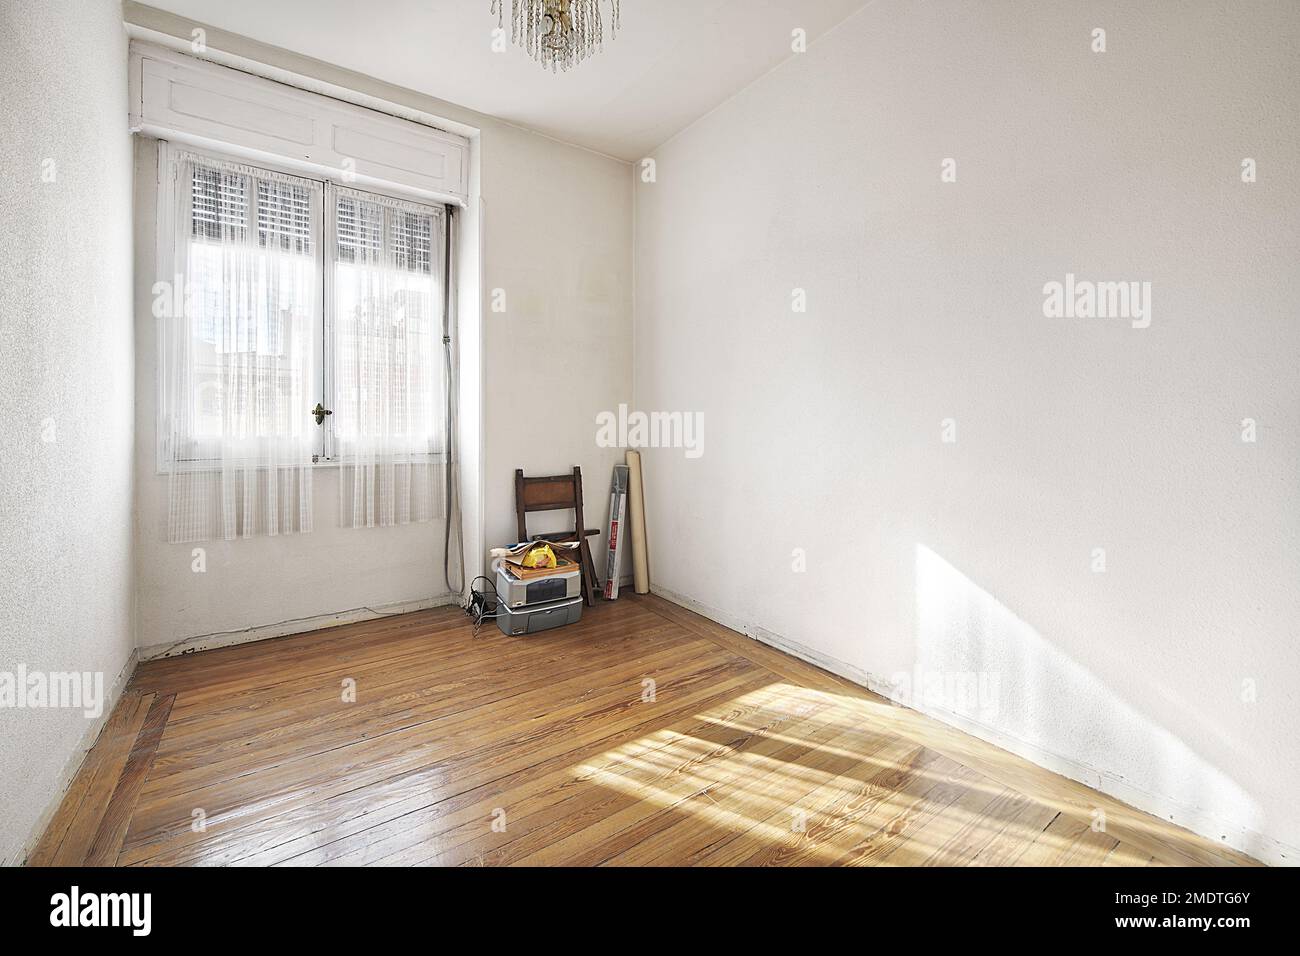 chambre vide d'une maison avec un plancher de beau parquet de pin avec une fenêtre avec des rideaux blancs et quelques objets anciens dans le coin Banque D'Images